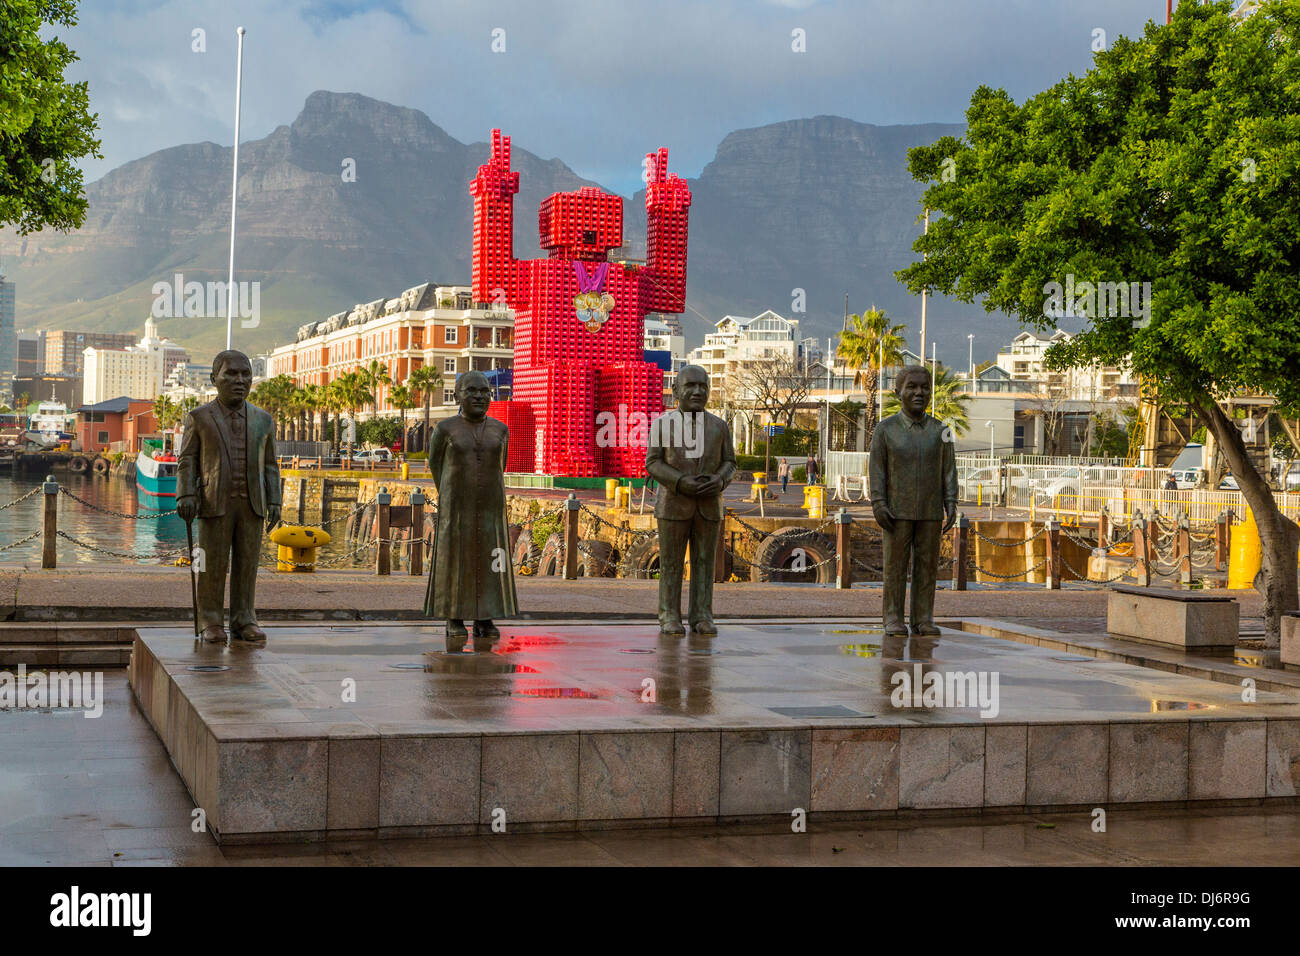 Südafrika, Cape Town. Nobel Square Statuen von Albert Luthuli, Desmond Tutu, FW de Klerk und Nelson Mandela. Stockfoto